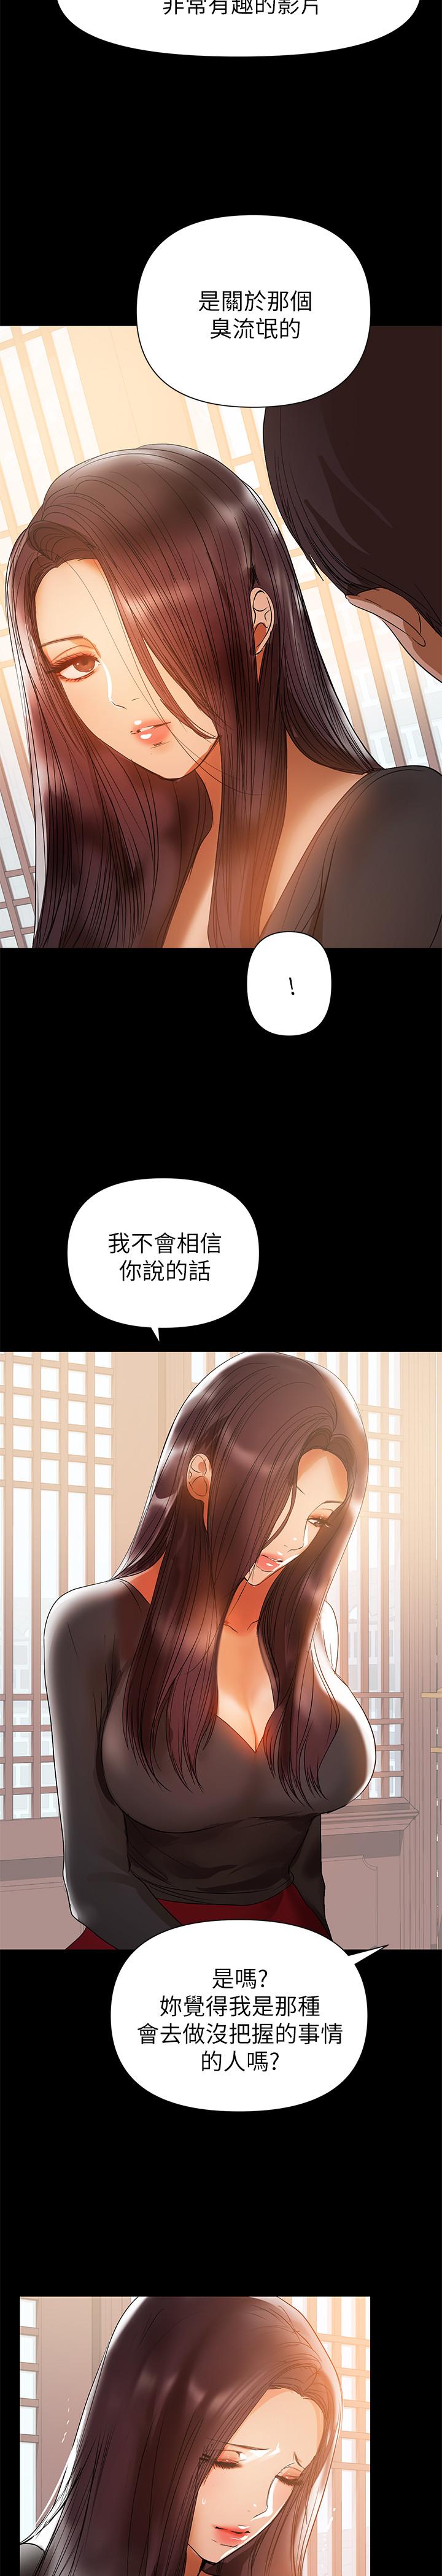 韩国污漫画 兼職奶媽 第31话-想生小孩的侑希 20